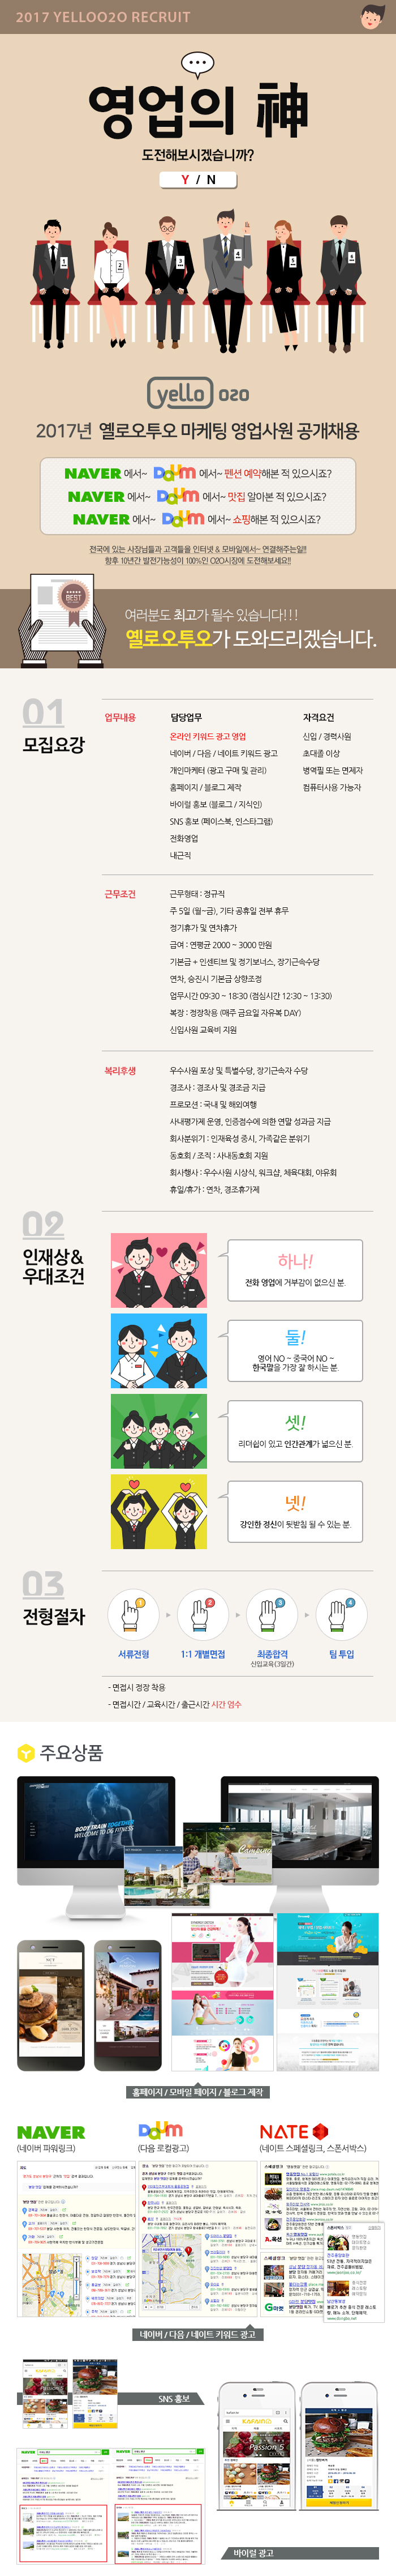 2017년 옐로오투오 마케팅 영업사원 공개채용